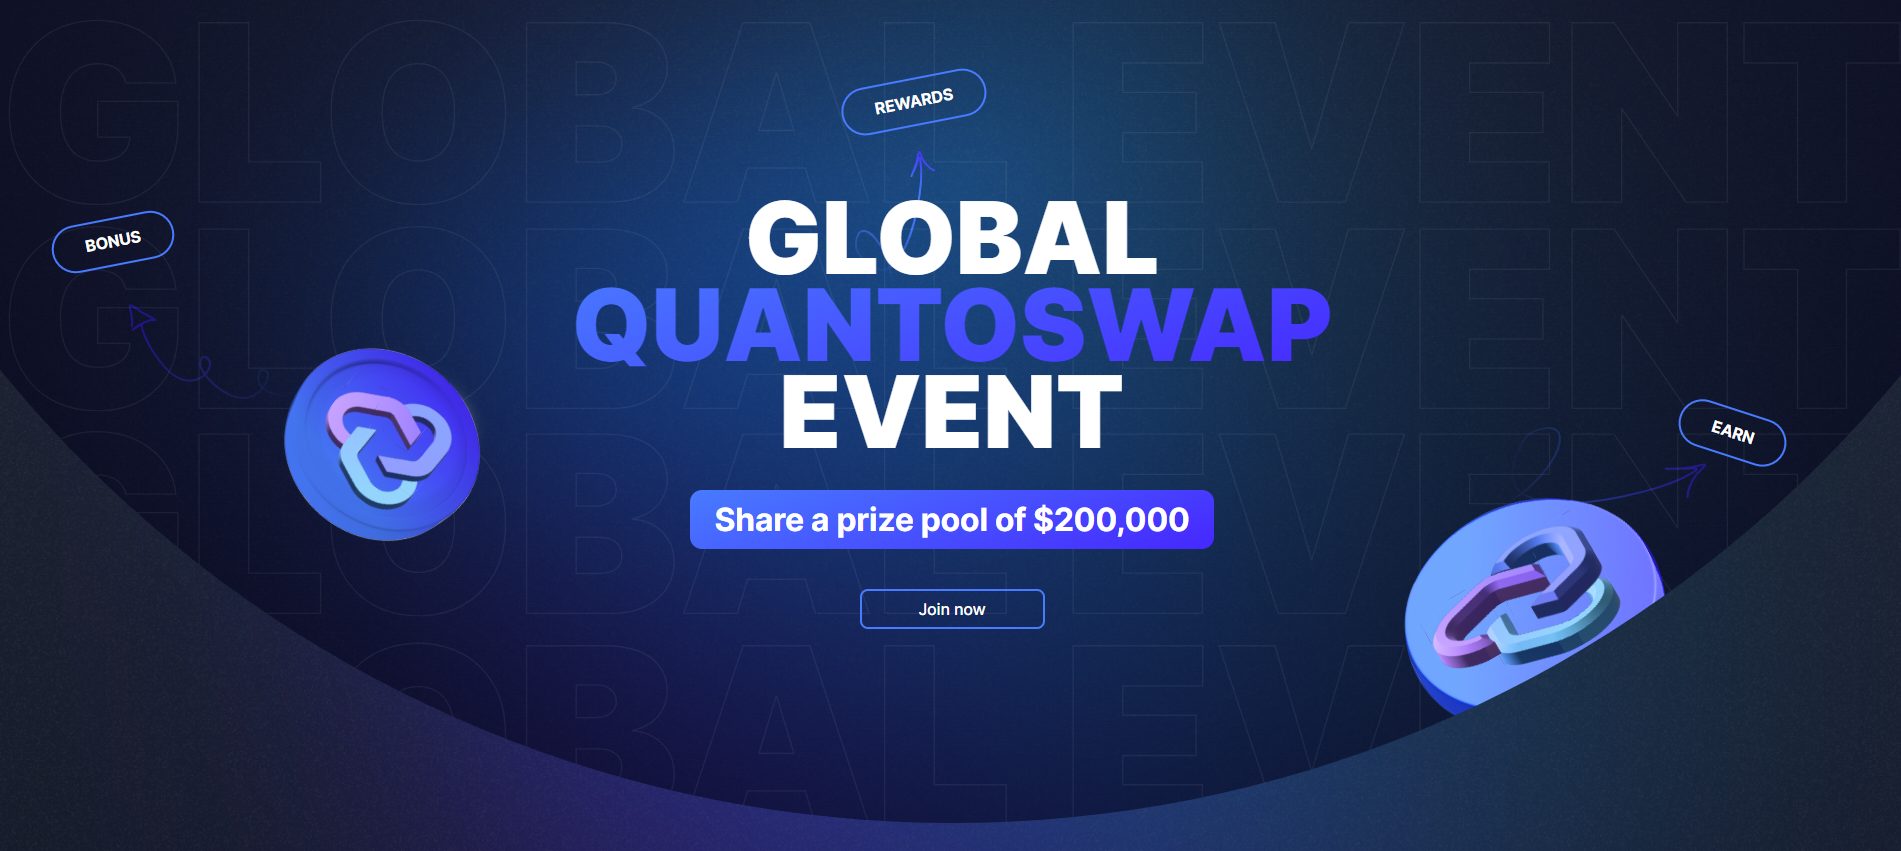 Presentamos QuantoSwap: un DEX innovador basado en Ethereum con múltiples flujos de ingresos